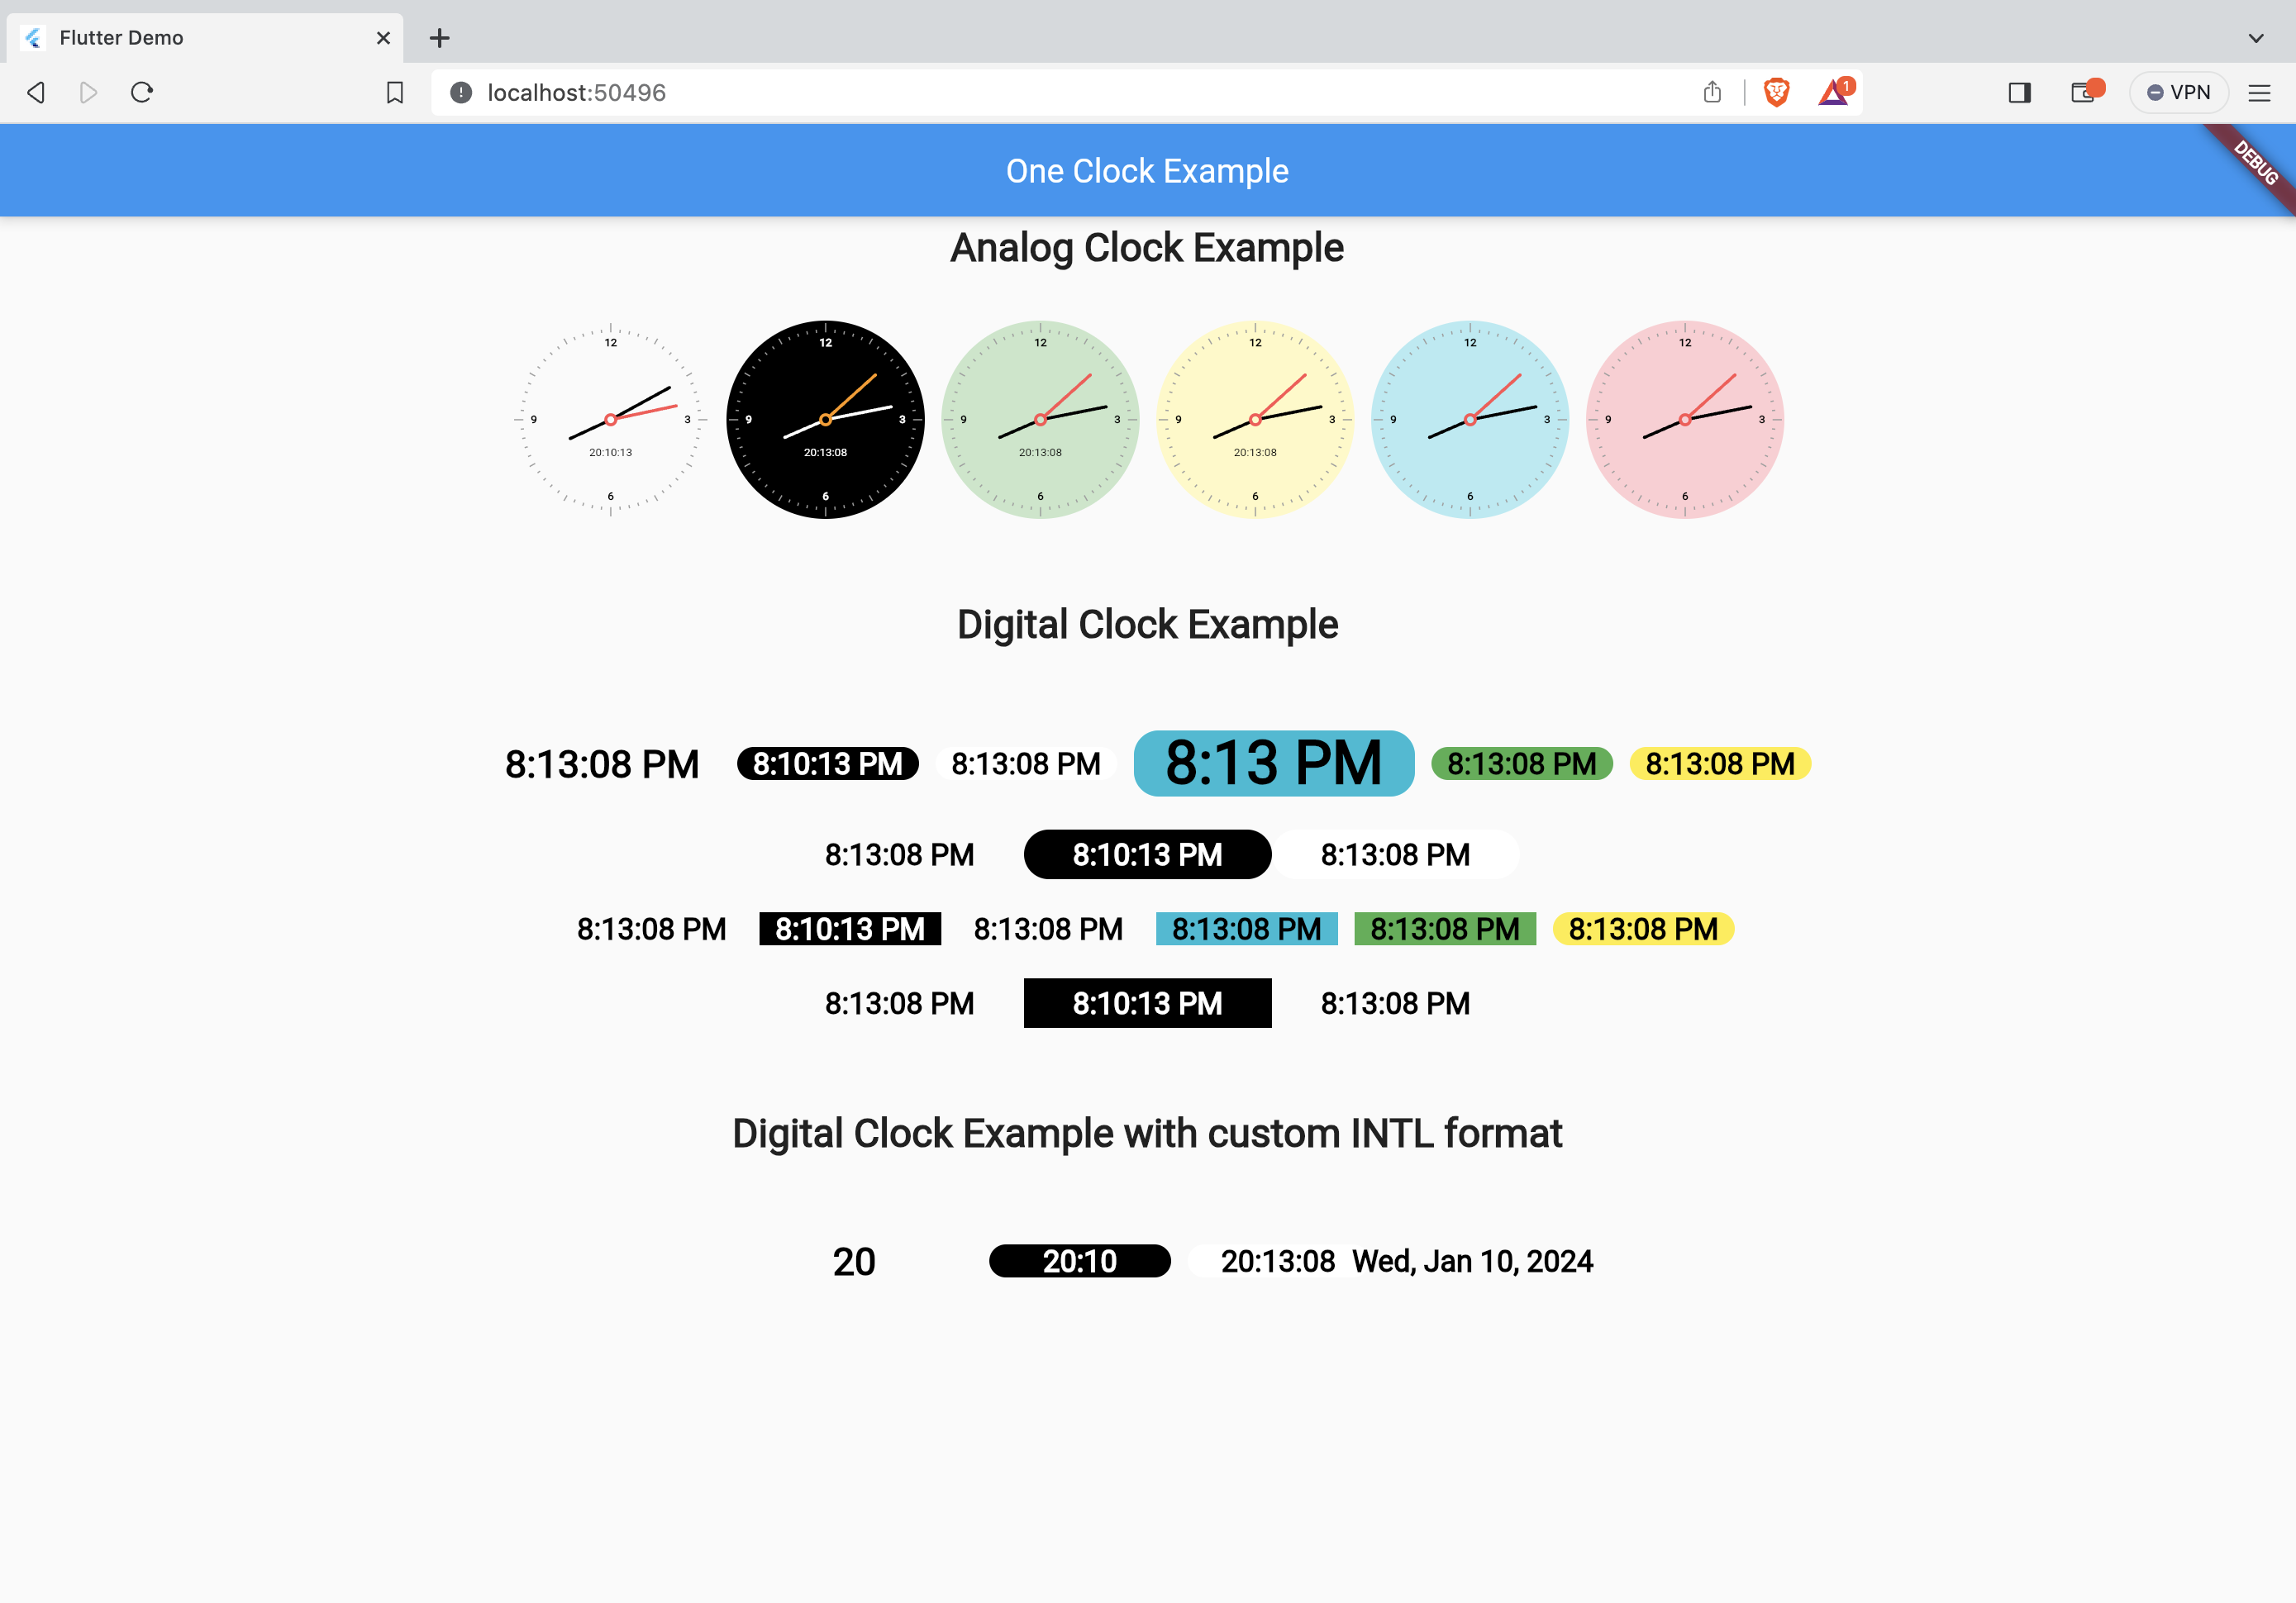 Analog/Digital Clock Screenshot